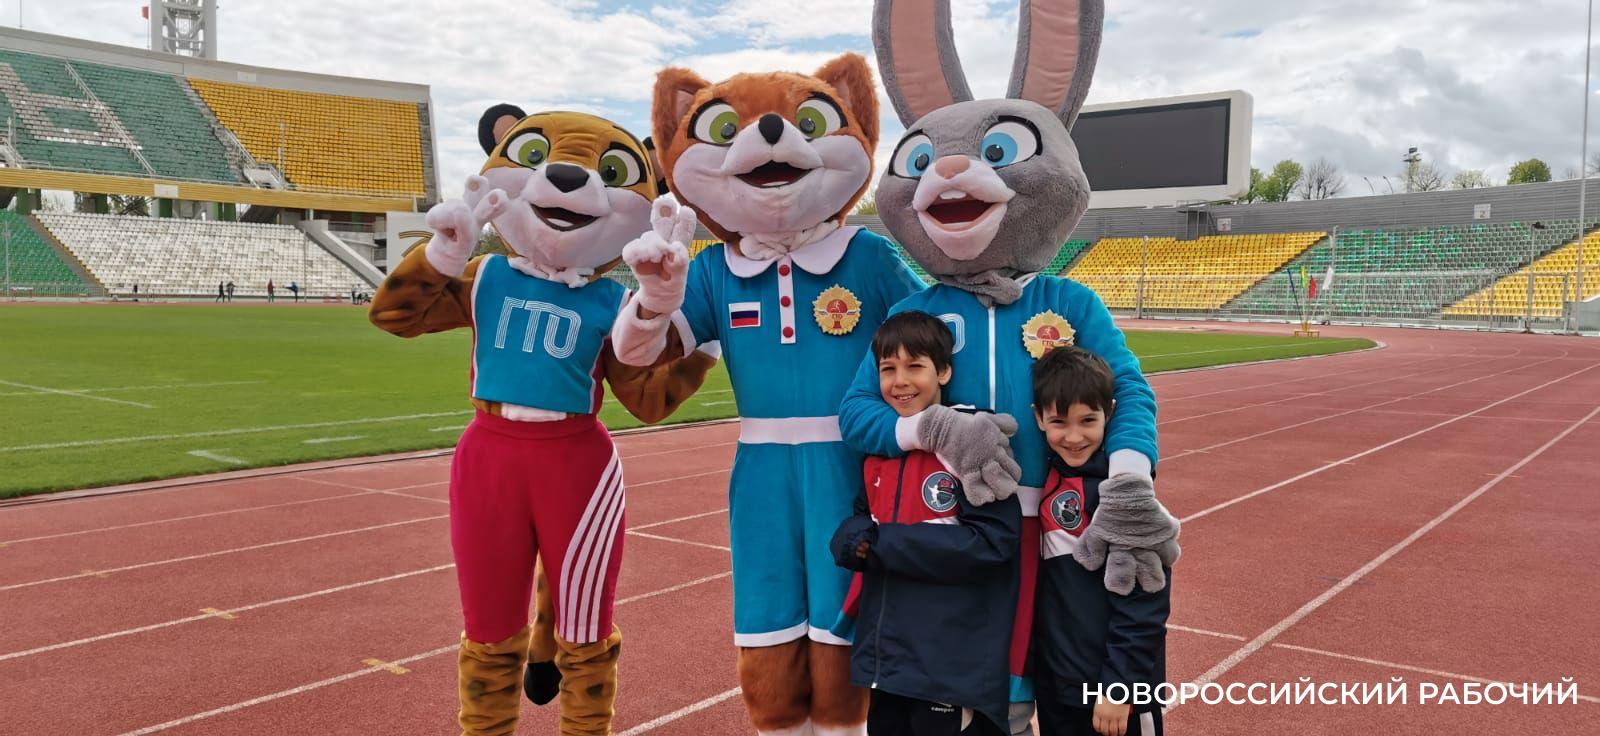 Новороссийск занимает первое место в крае по ГТО. Спортивных семей все больше. В чем секрет?